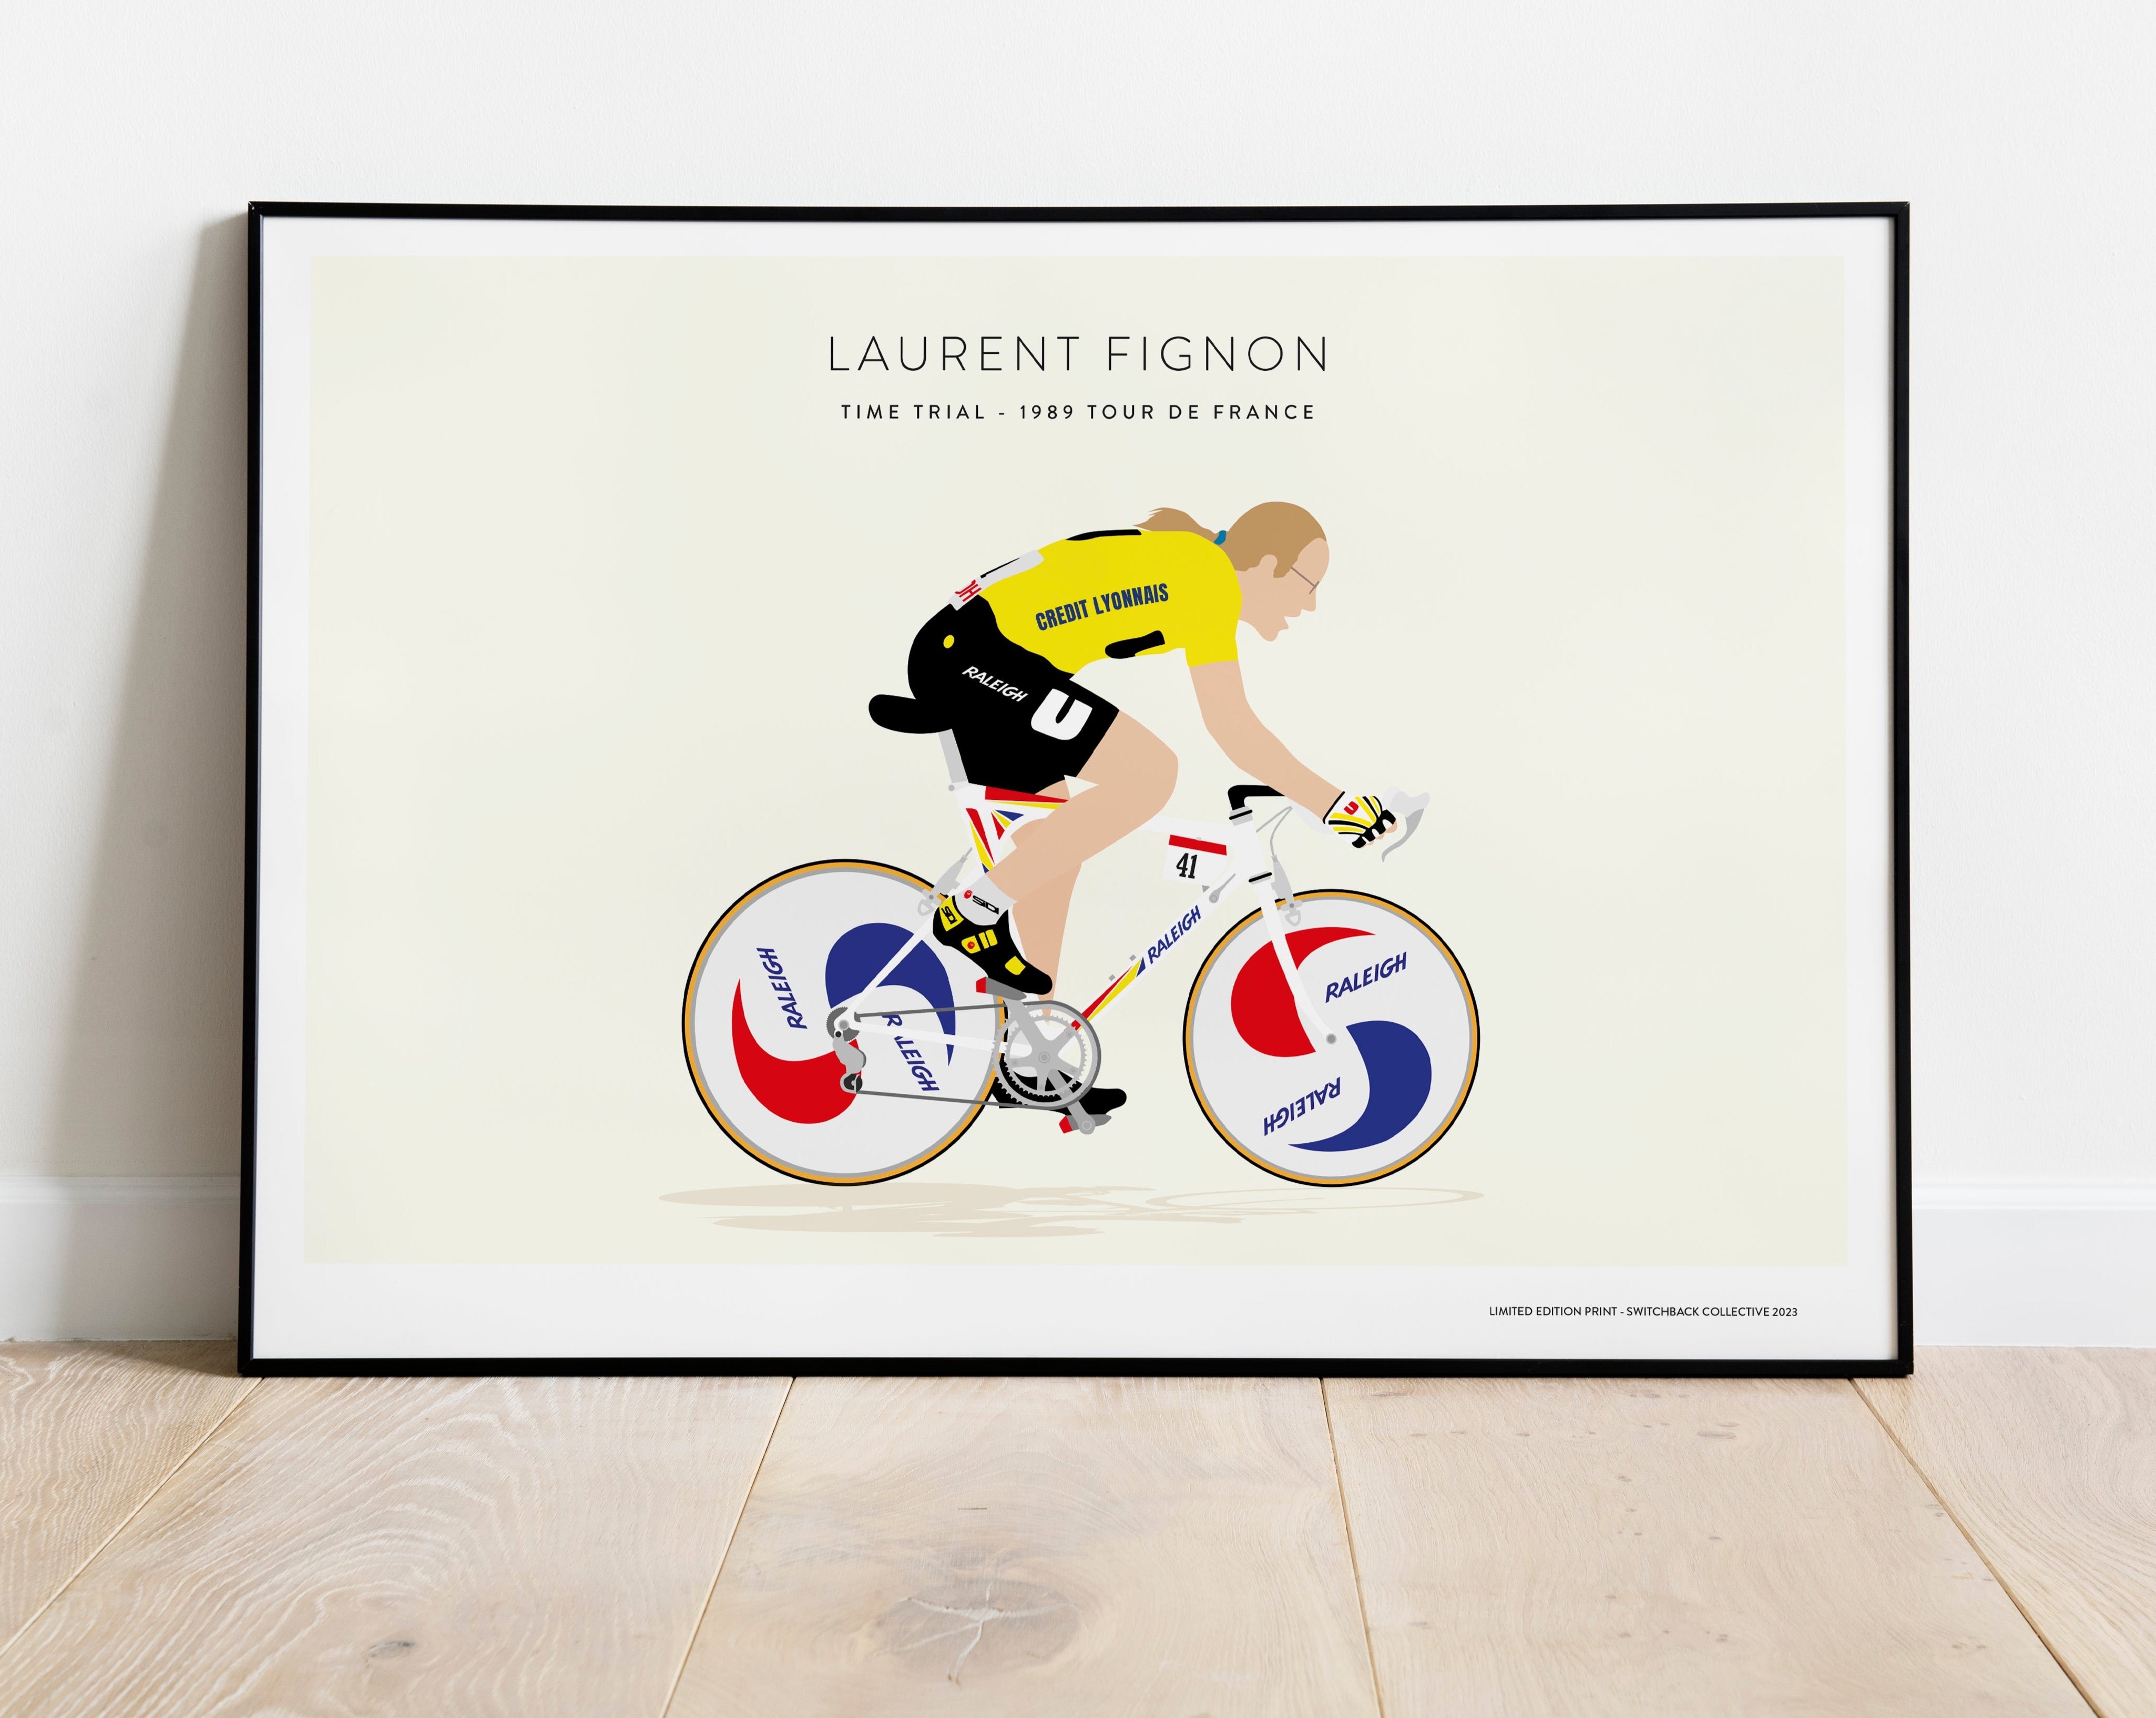 Laurent Fignon, Time Trial, 1989 Tour De France - Limited Edition Print